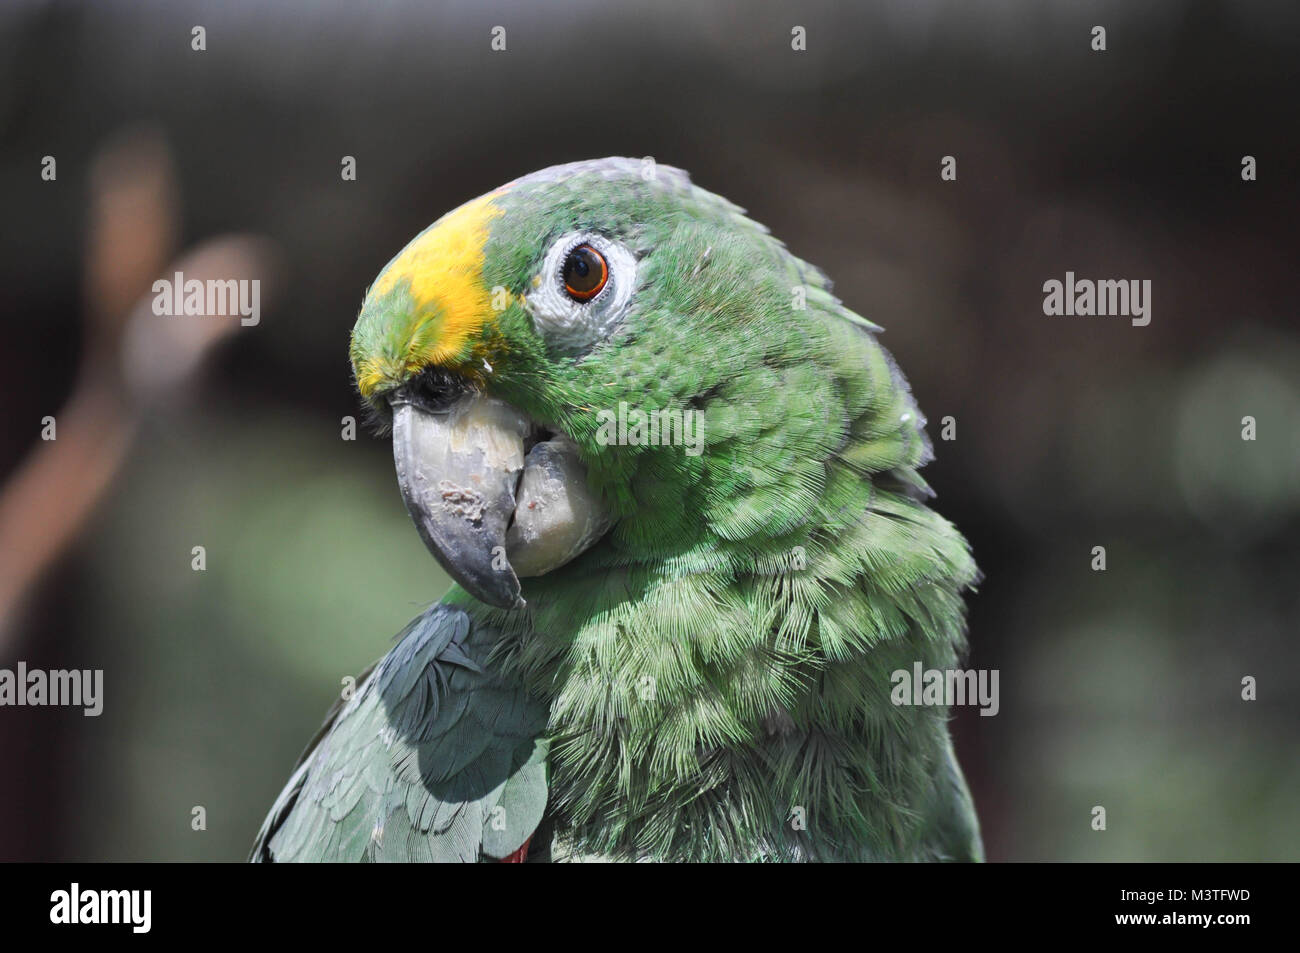 Gelbe gekrönte Amazon Vogel Stockfotografie - Alamy